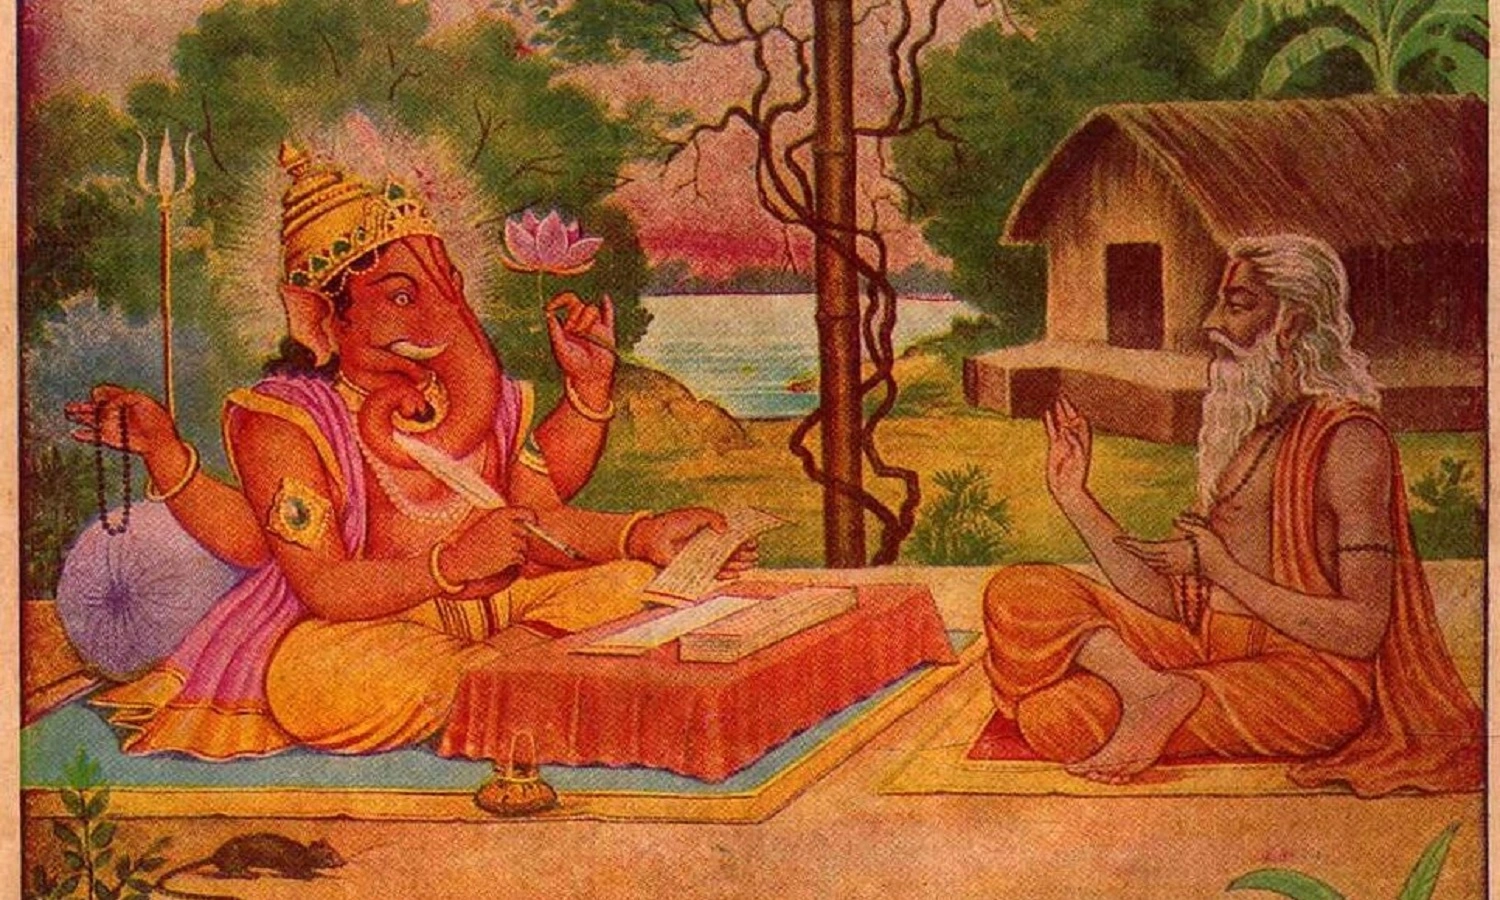 Ganesh Visarjan Ananat chaturdashi Ke Din kyon hota hai